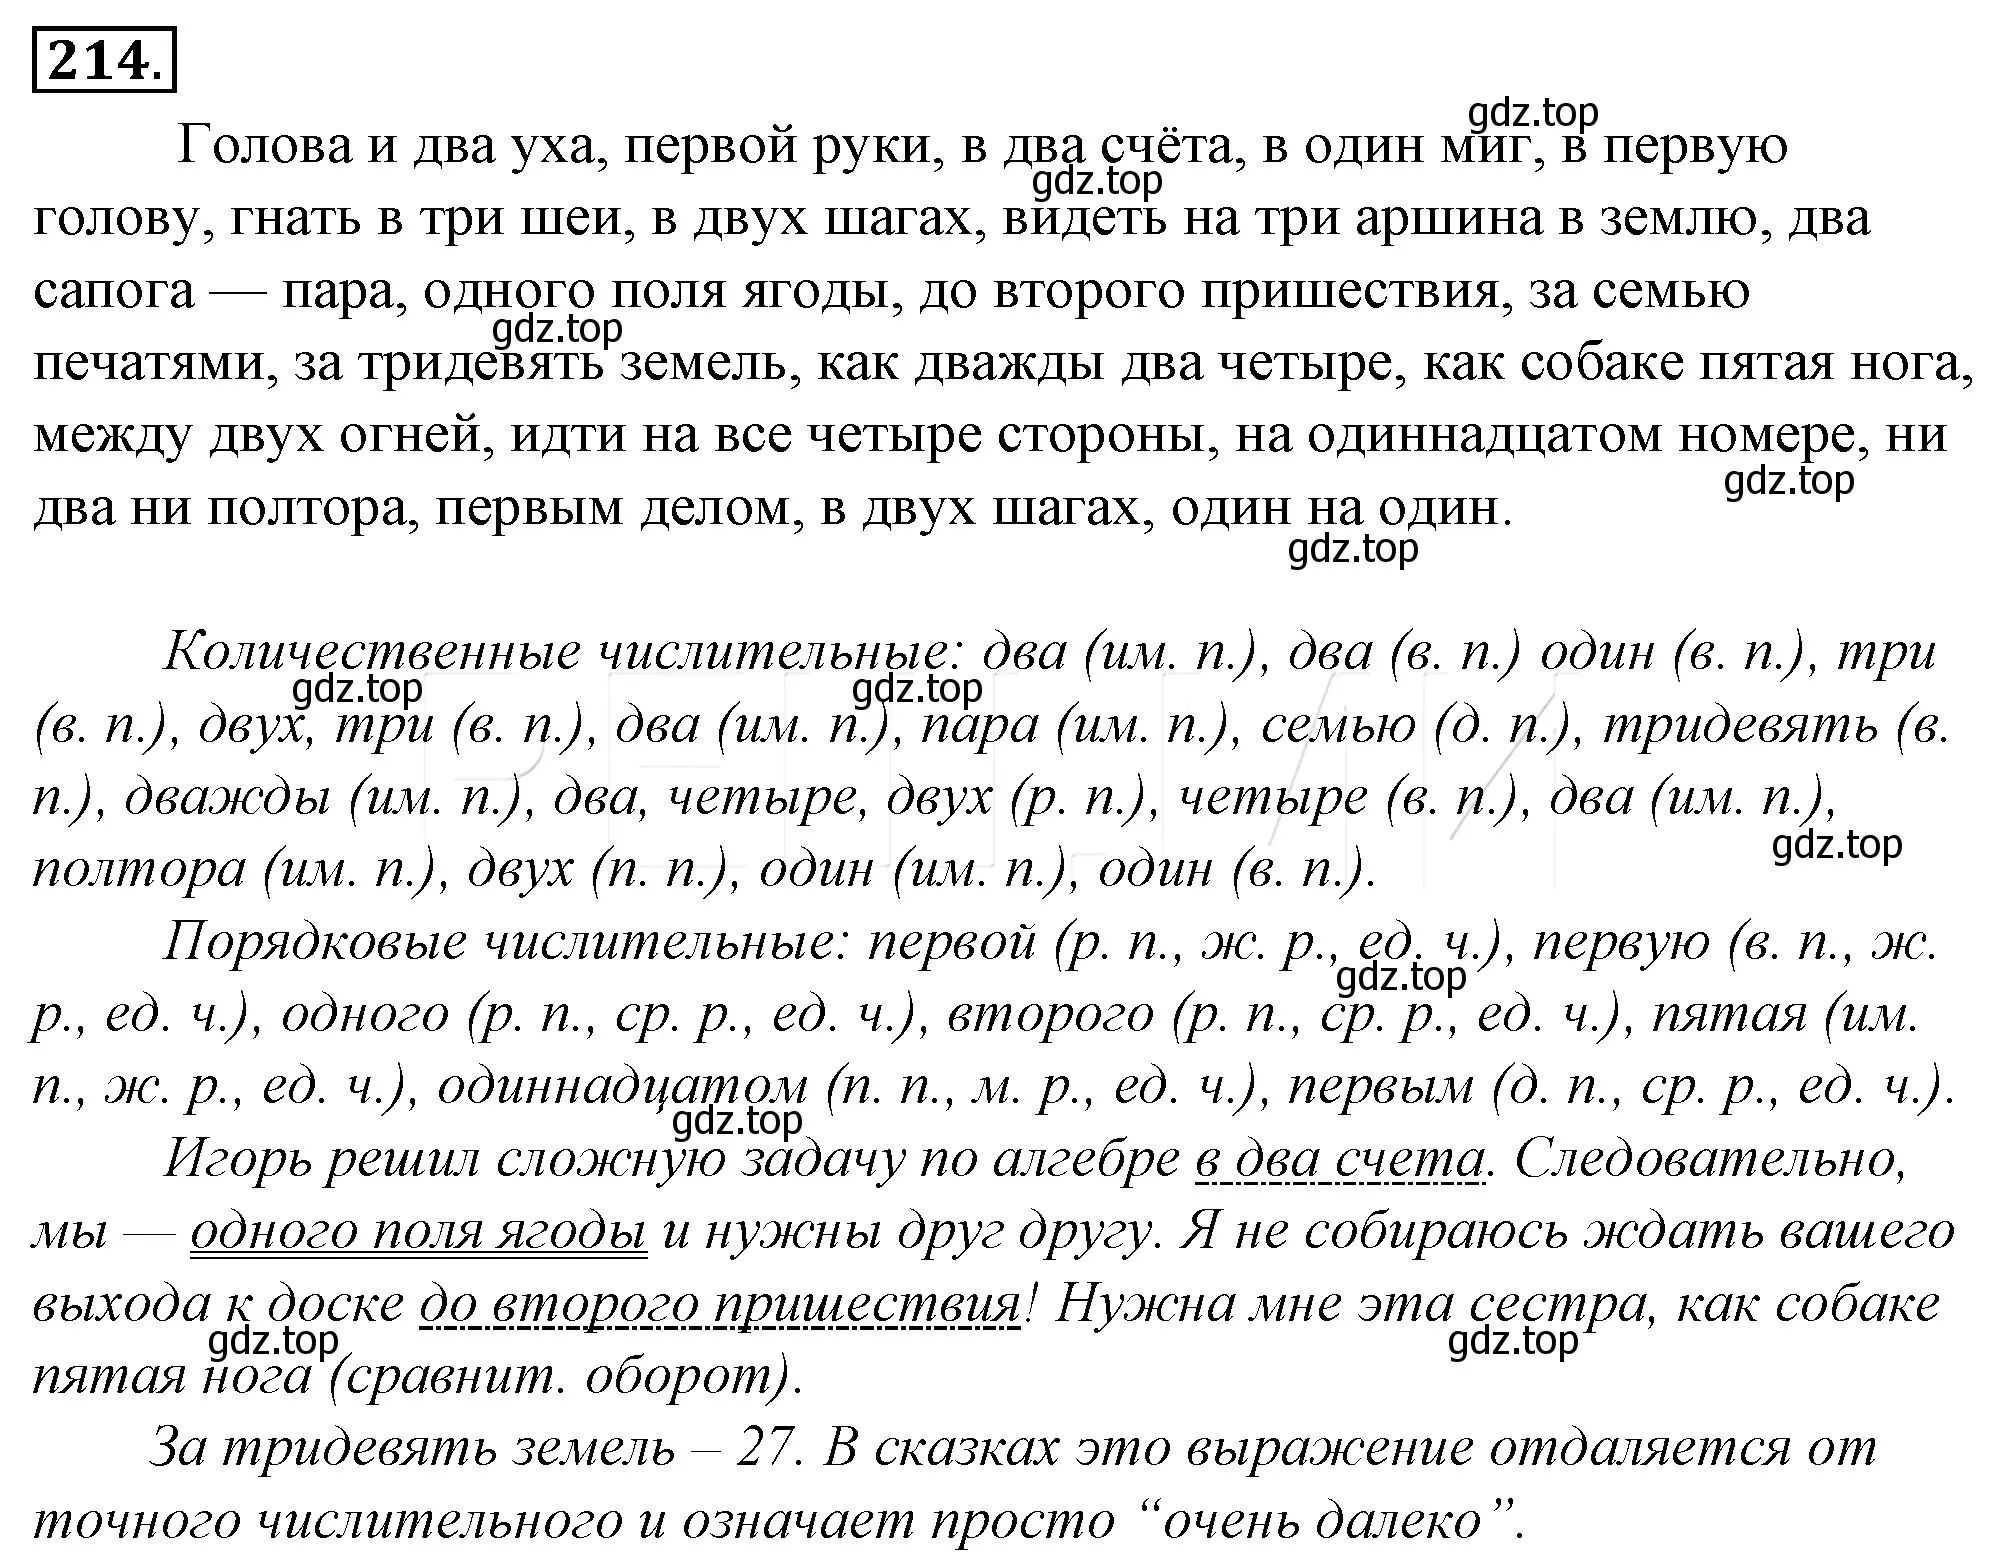 Решение 4. номер 238 (страница 225) гдз по русскому языку 10-11 класс Гольцова, Шамшин, учебник 1 часть